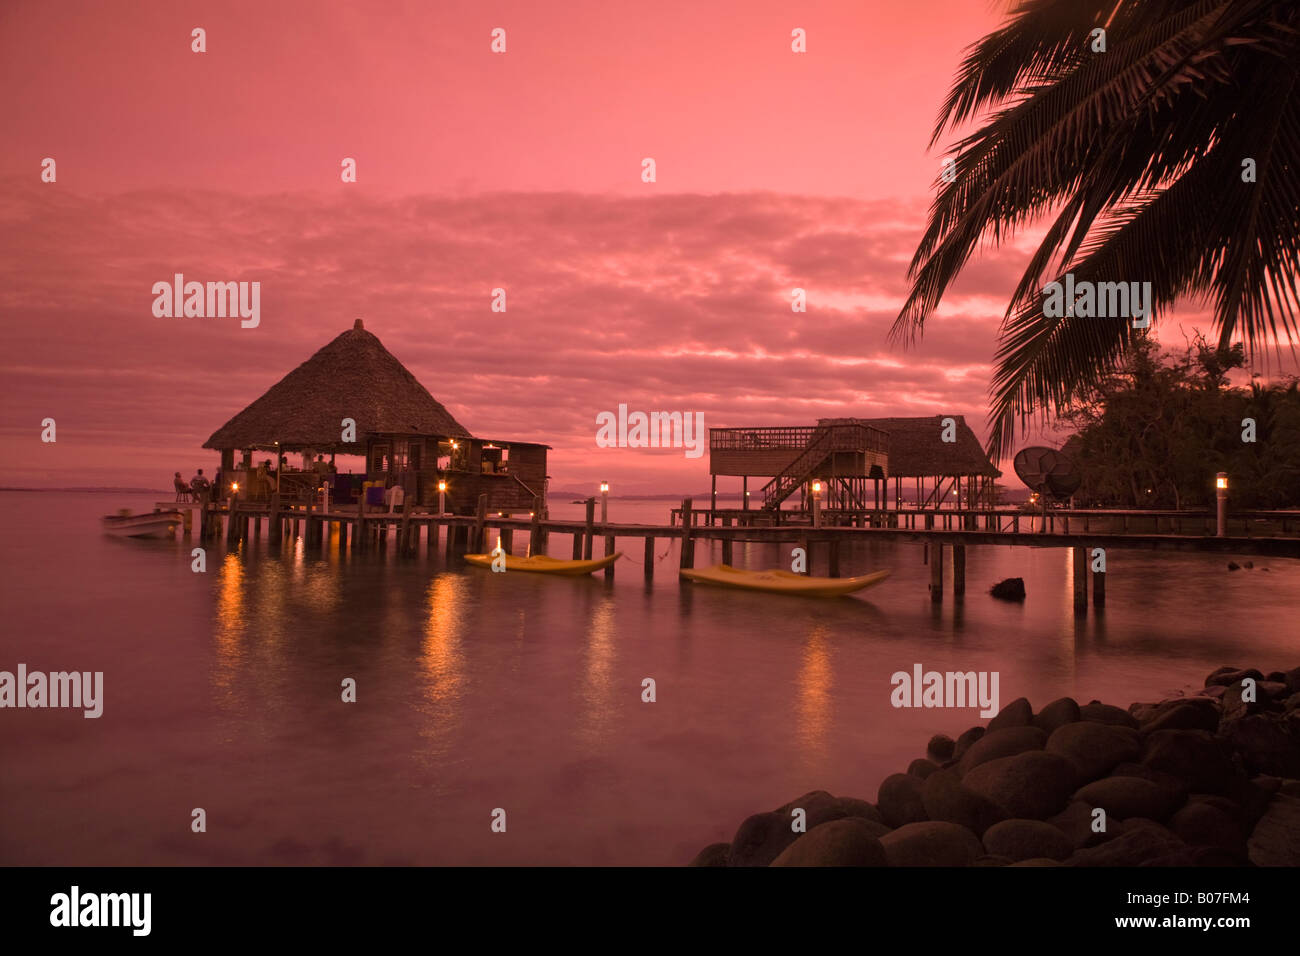 Panama, Provinz Bocas del Toro, Carenero Insel (Isla Carenero), eingelegte Parrot Restaurant und Bar spiegelt sich im Meer bei Sonnenuntergang Stockfoto